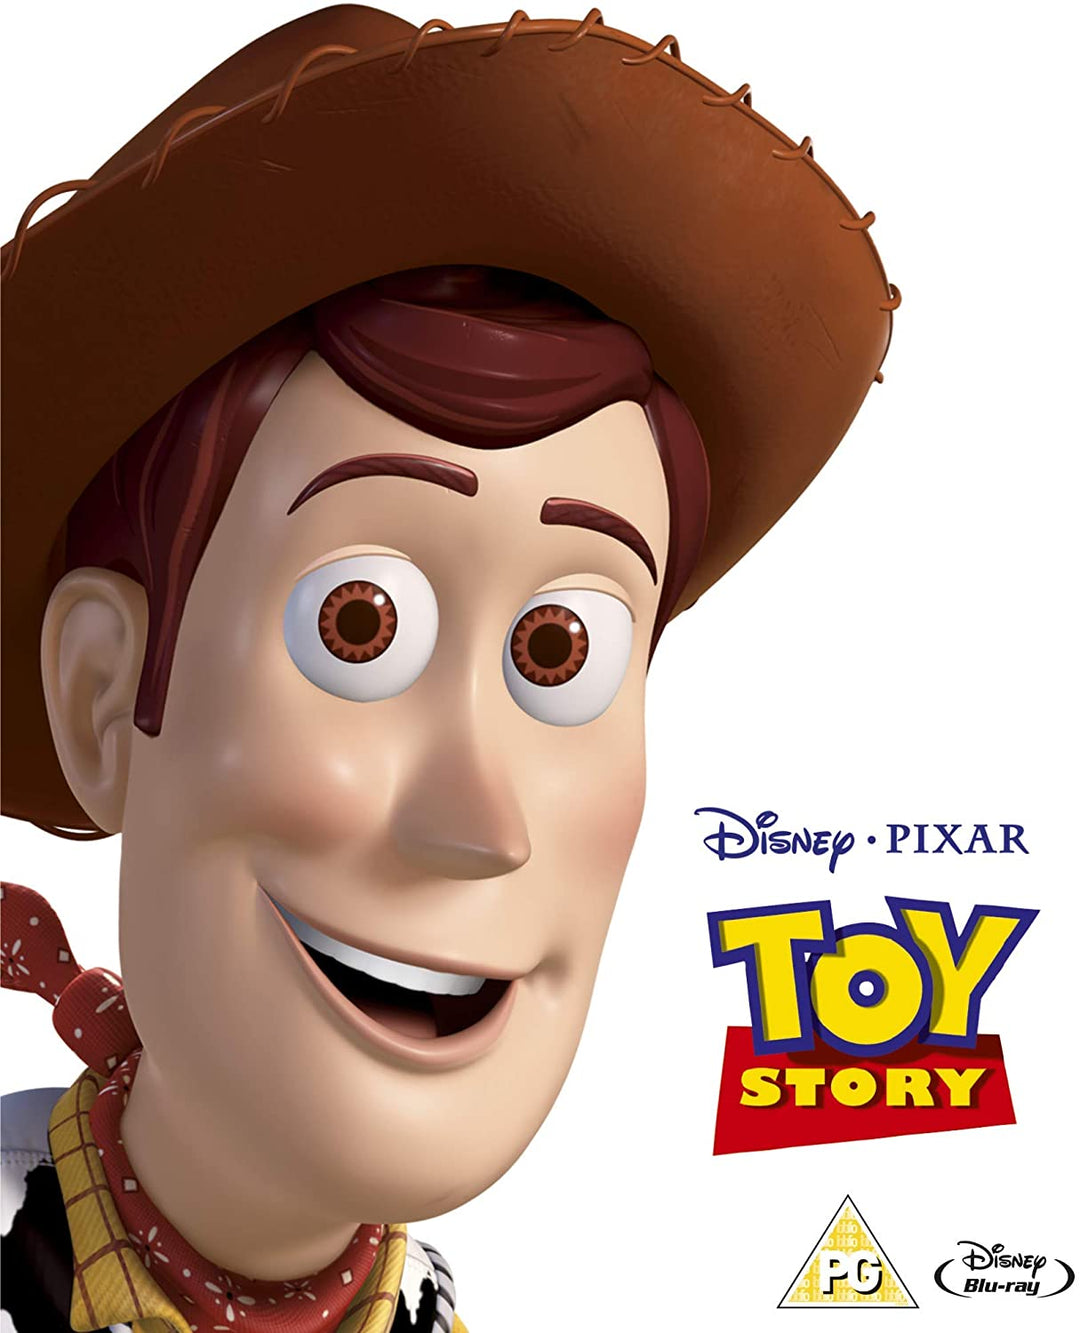 Toy Story (édition spéciale) [Blu-ray] [Région gratuite]